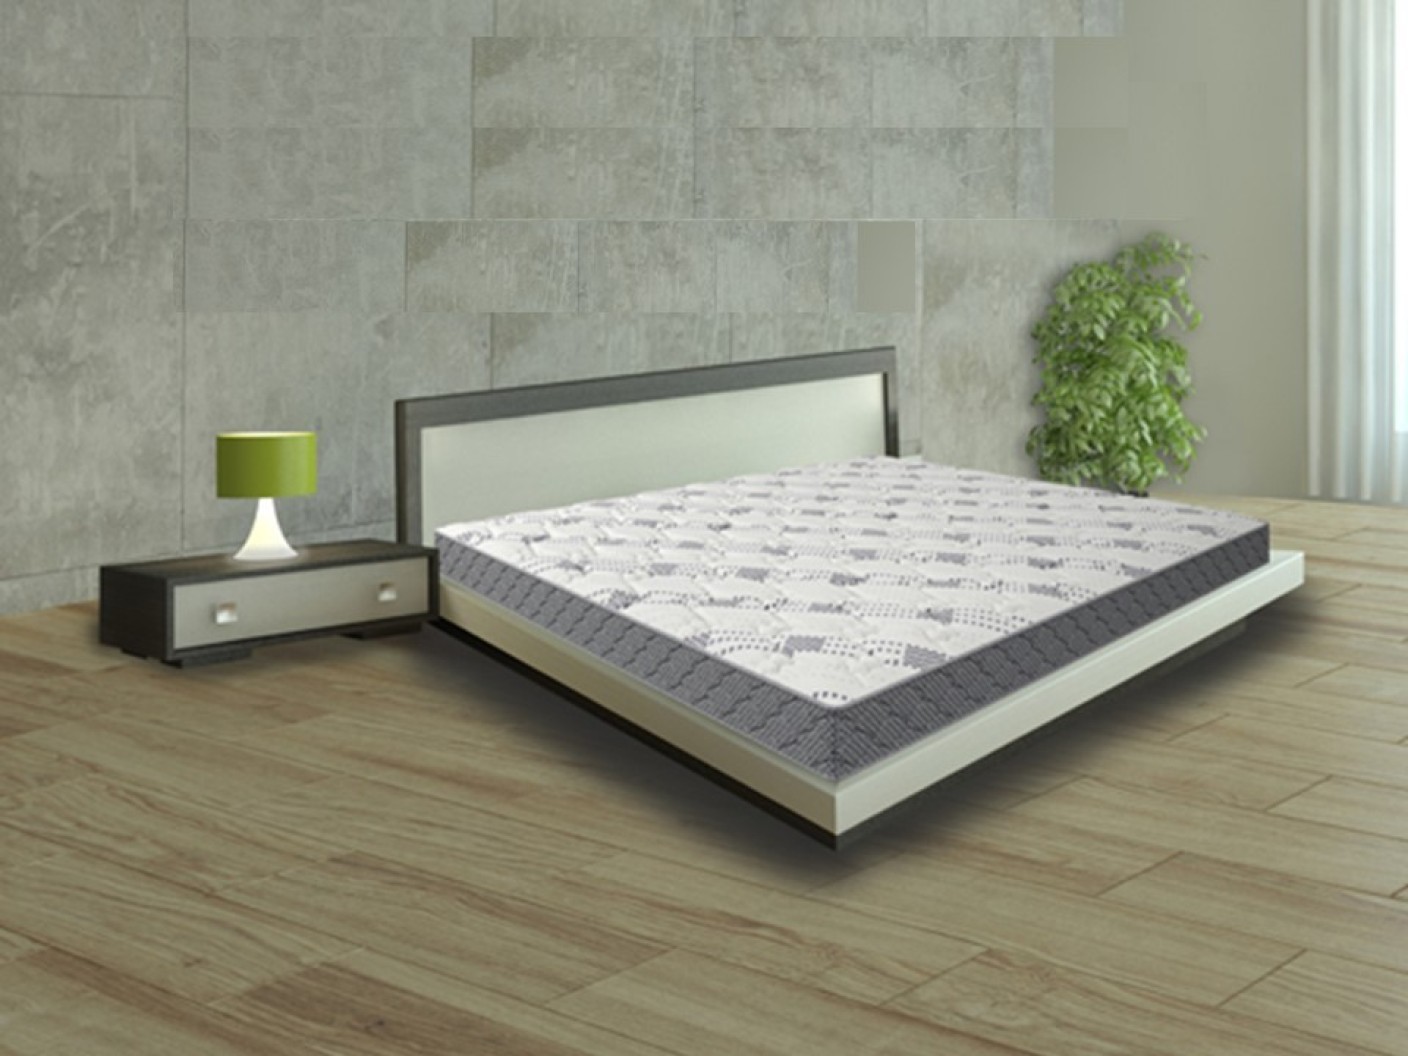 sleepwell mattress king size 6 inch